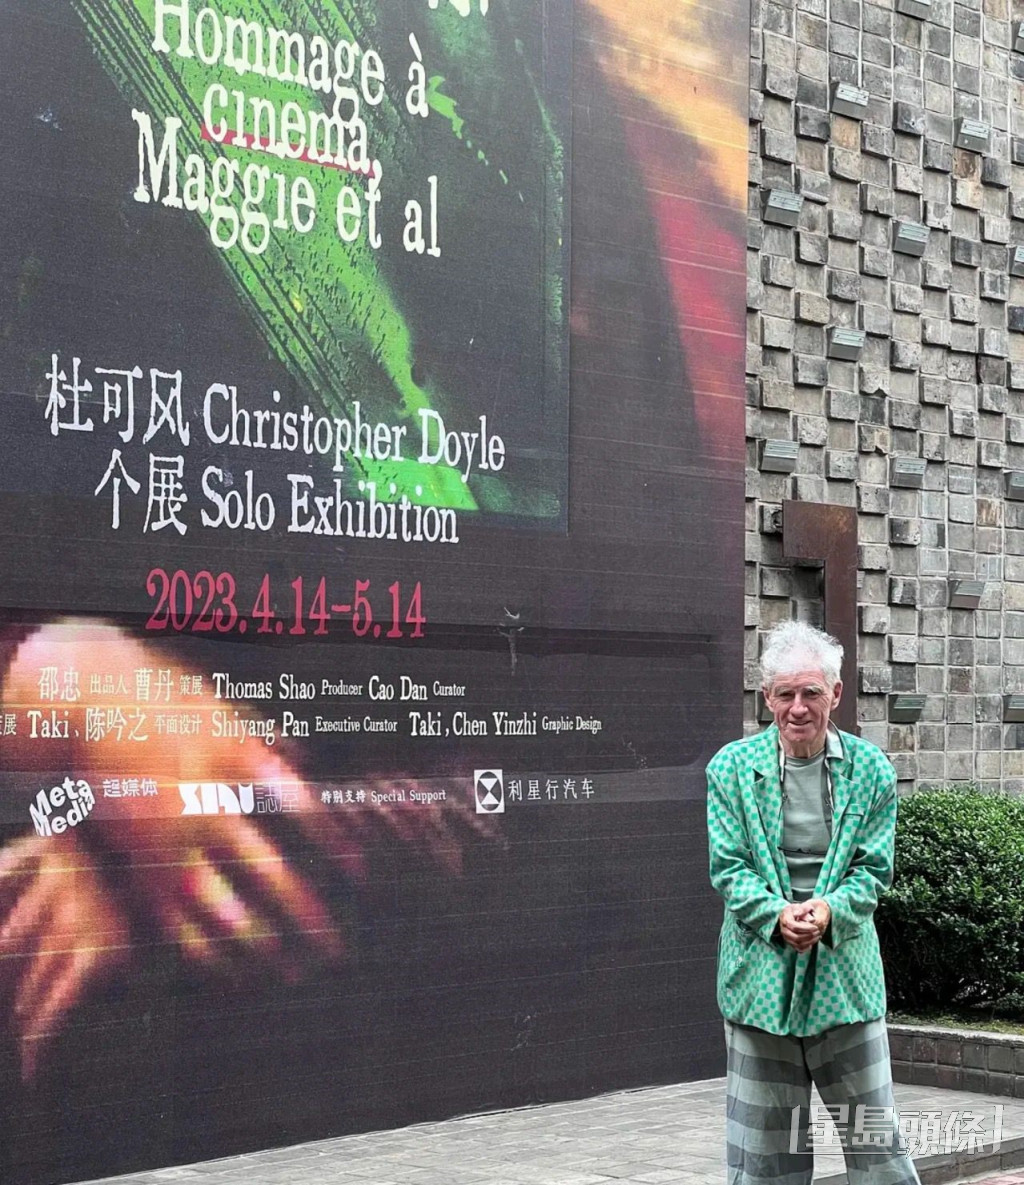 杜可風自上月14日至本月15日在上海舉行個人展覽《如果沒有你》。